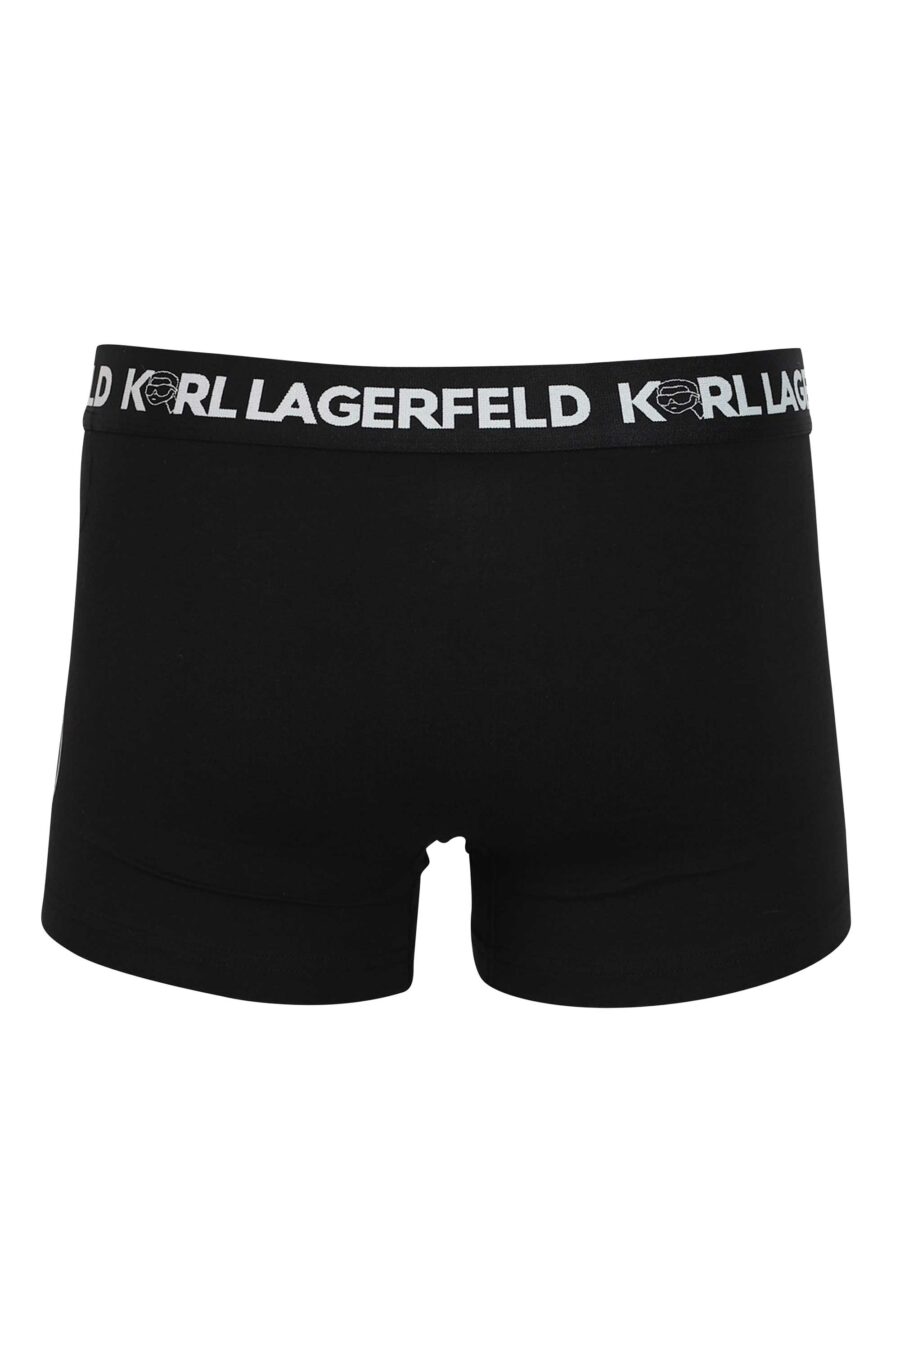 Pack de tres boxers negros con estampados diferentes "karl" - 8720744054580 6